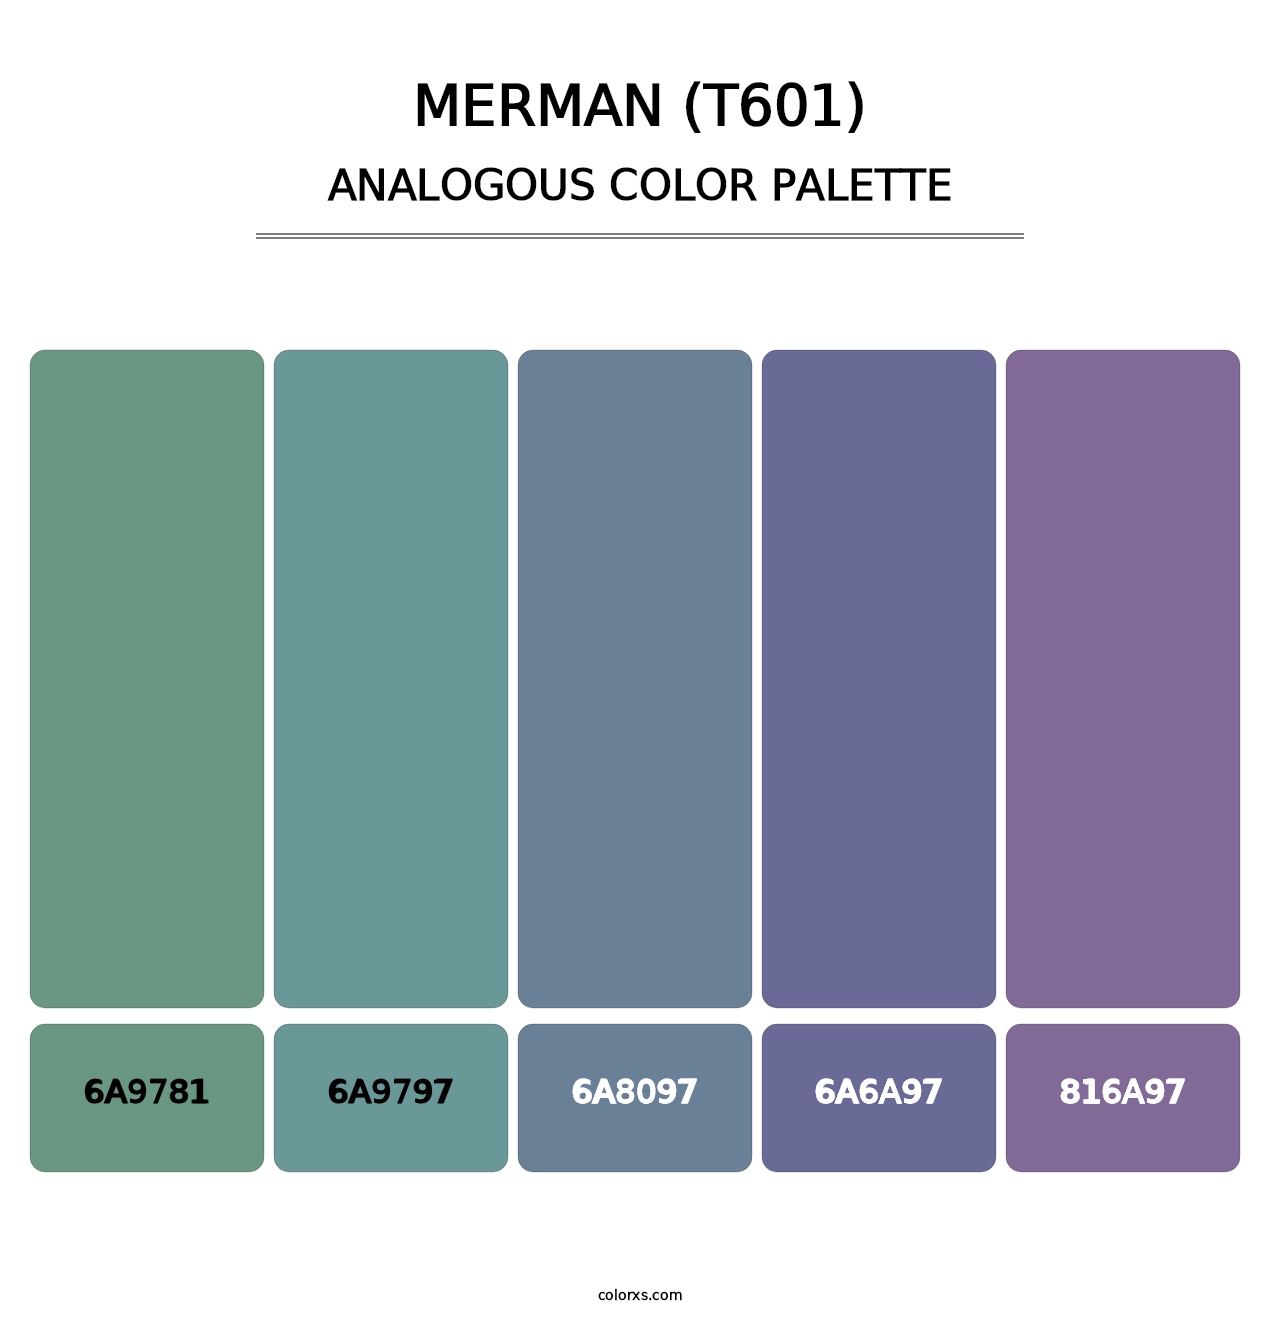 Merman (T601) - Analogous Color Palette